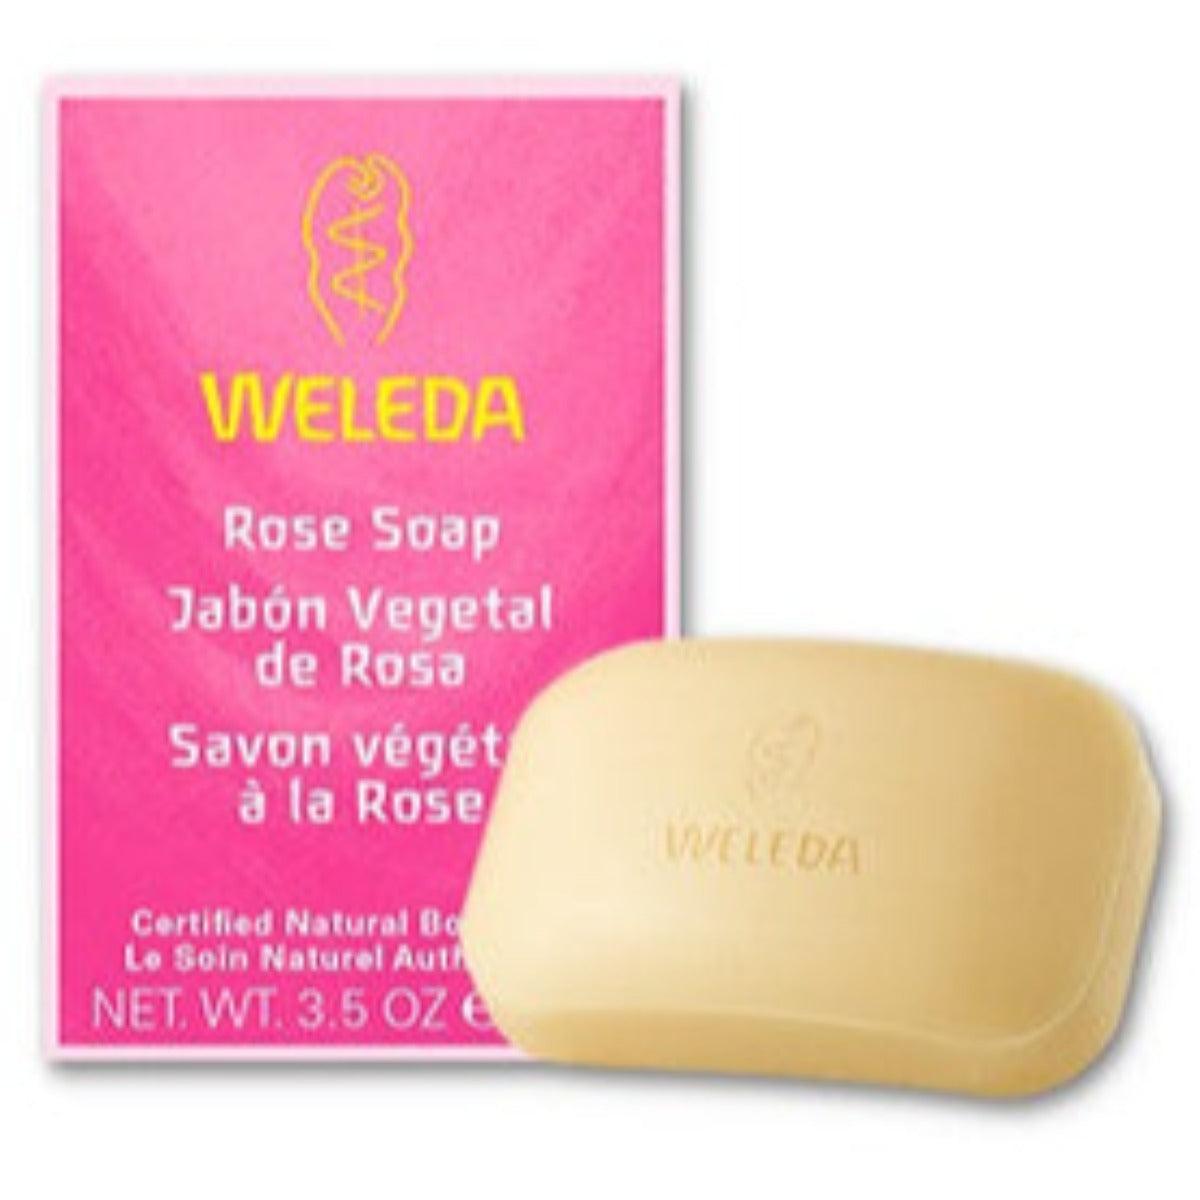 Weleda Rose Soap 100g Soap & Gel at Village Vitamin Store